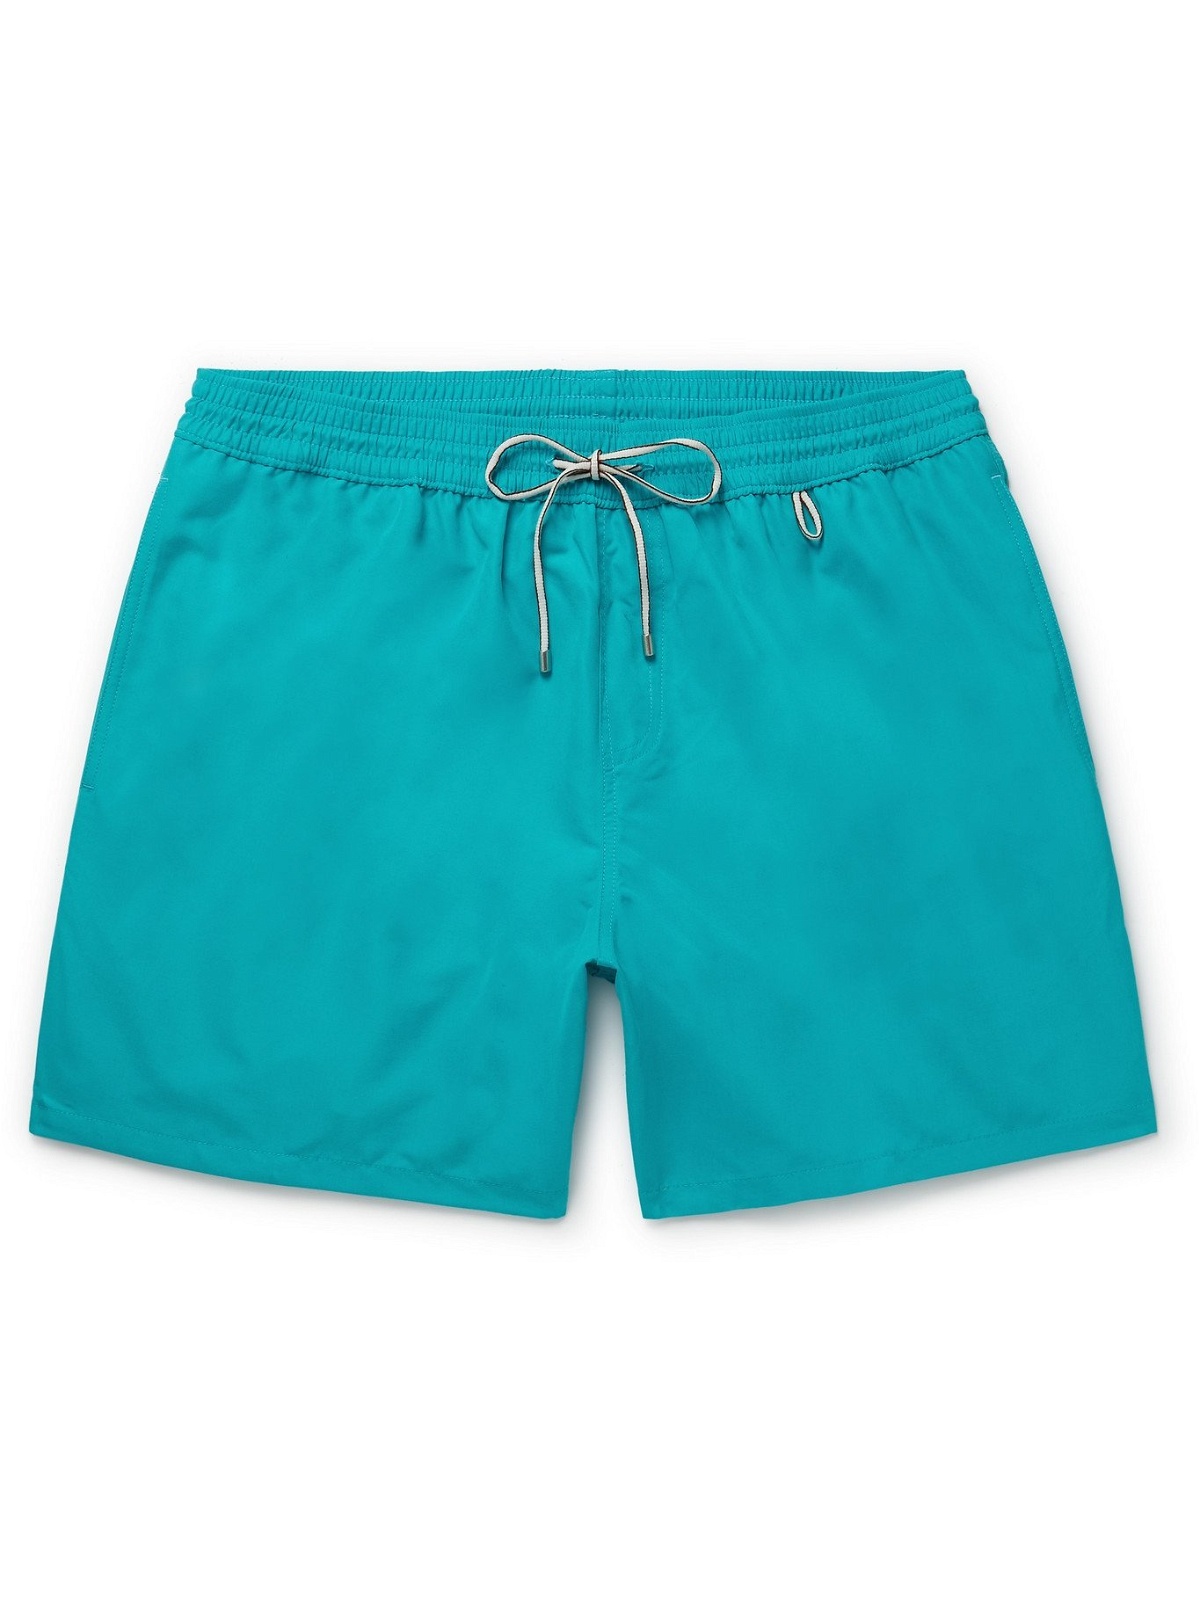 LORO PIANA - Bay Mid-Length Swim Shorts - Blue - XS Loro Piana